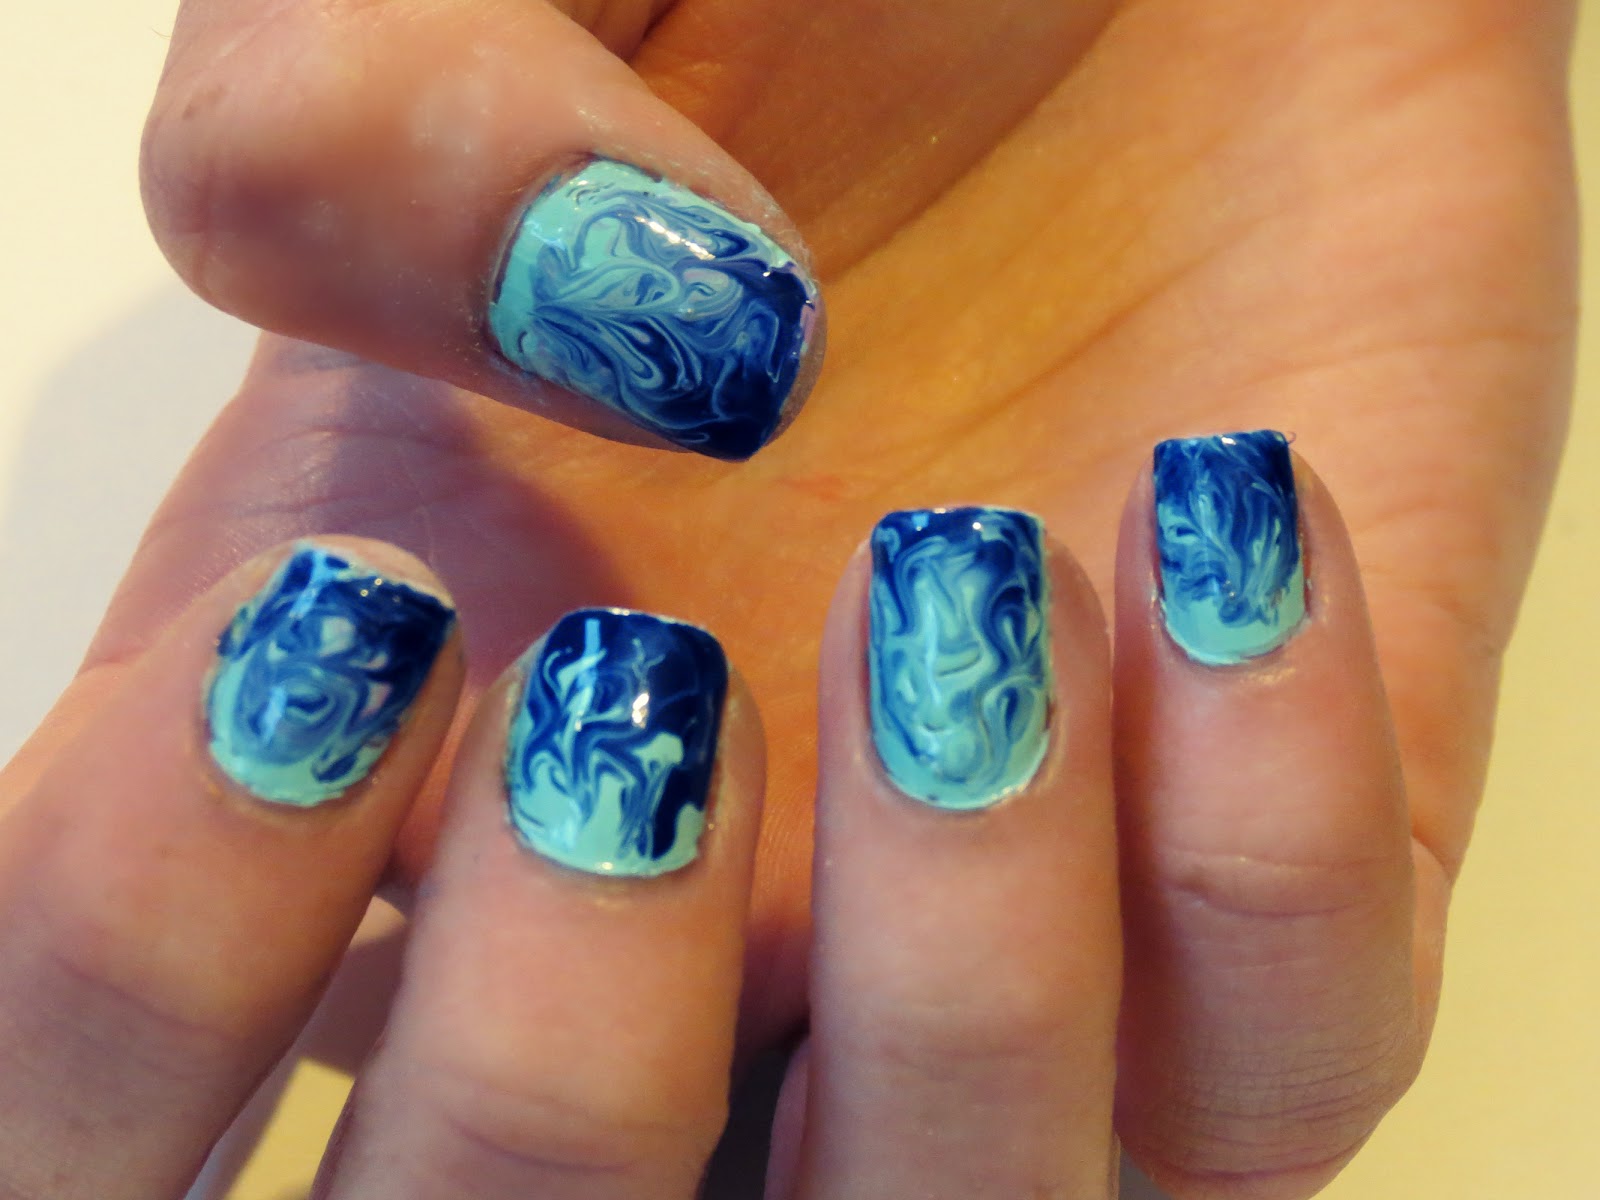   UK beauty, fashion and nail art blog: swirly nail art tutorial